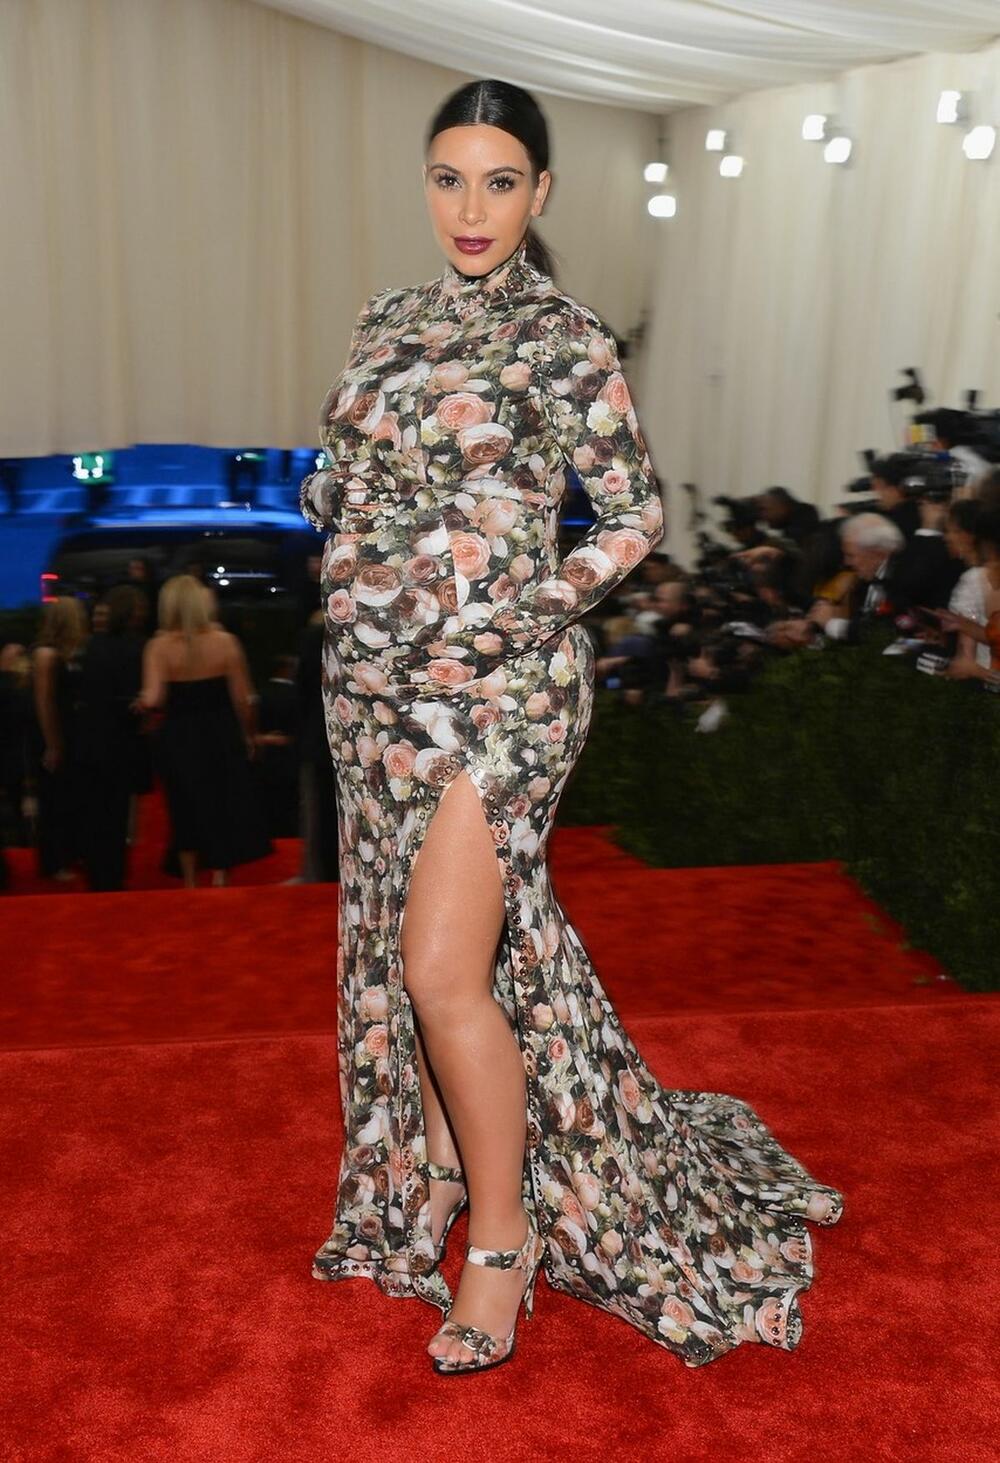 Trudna Kim Kardašijan je 2013. godine u Givenchy kreaciji u vidu haljine "zakopčane" do grla i u cela u floralnom dezenu očarala sve na crvenom tepihu.